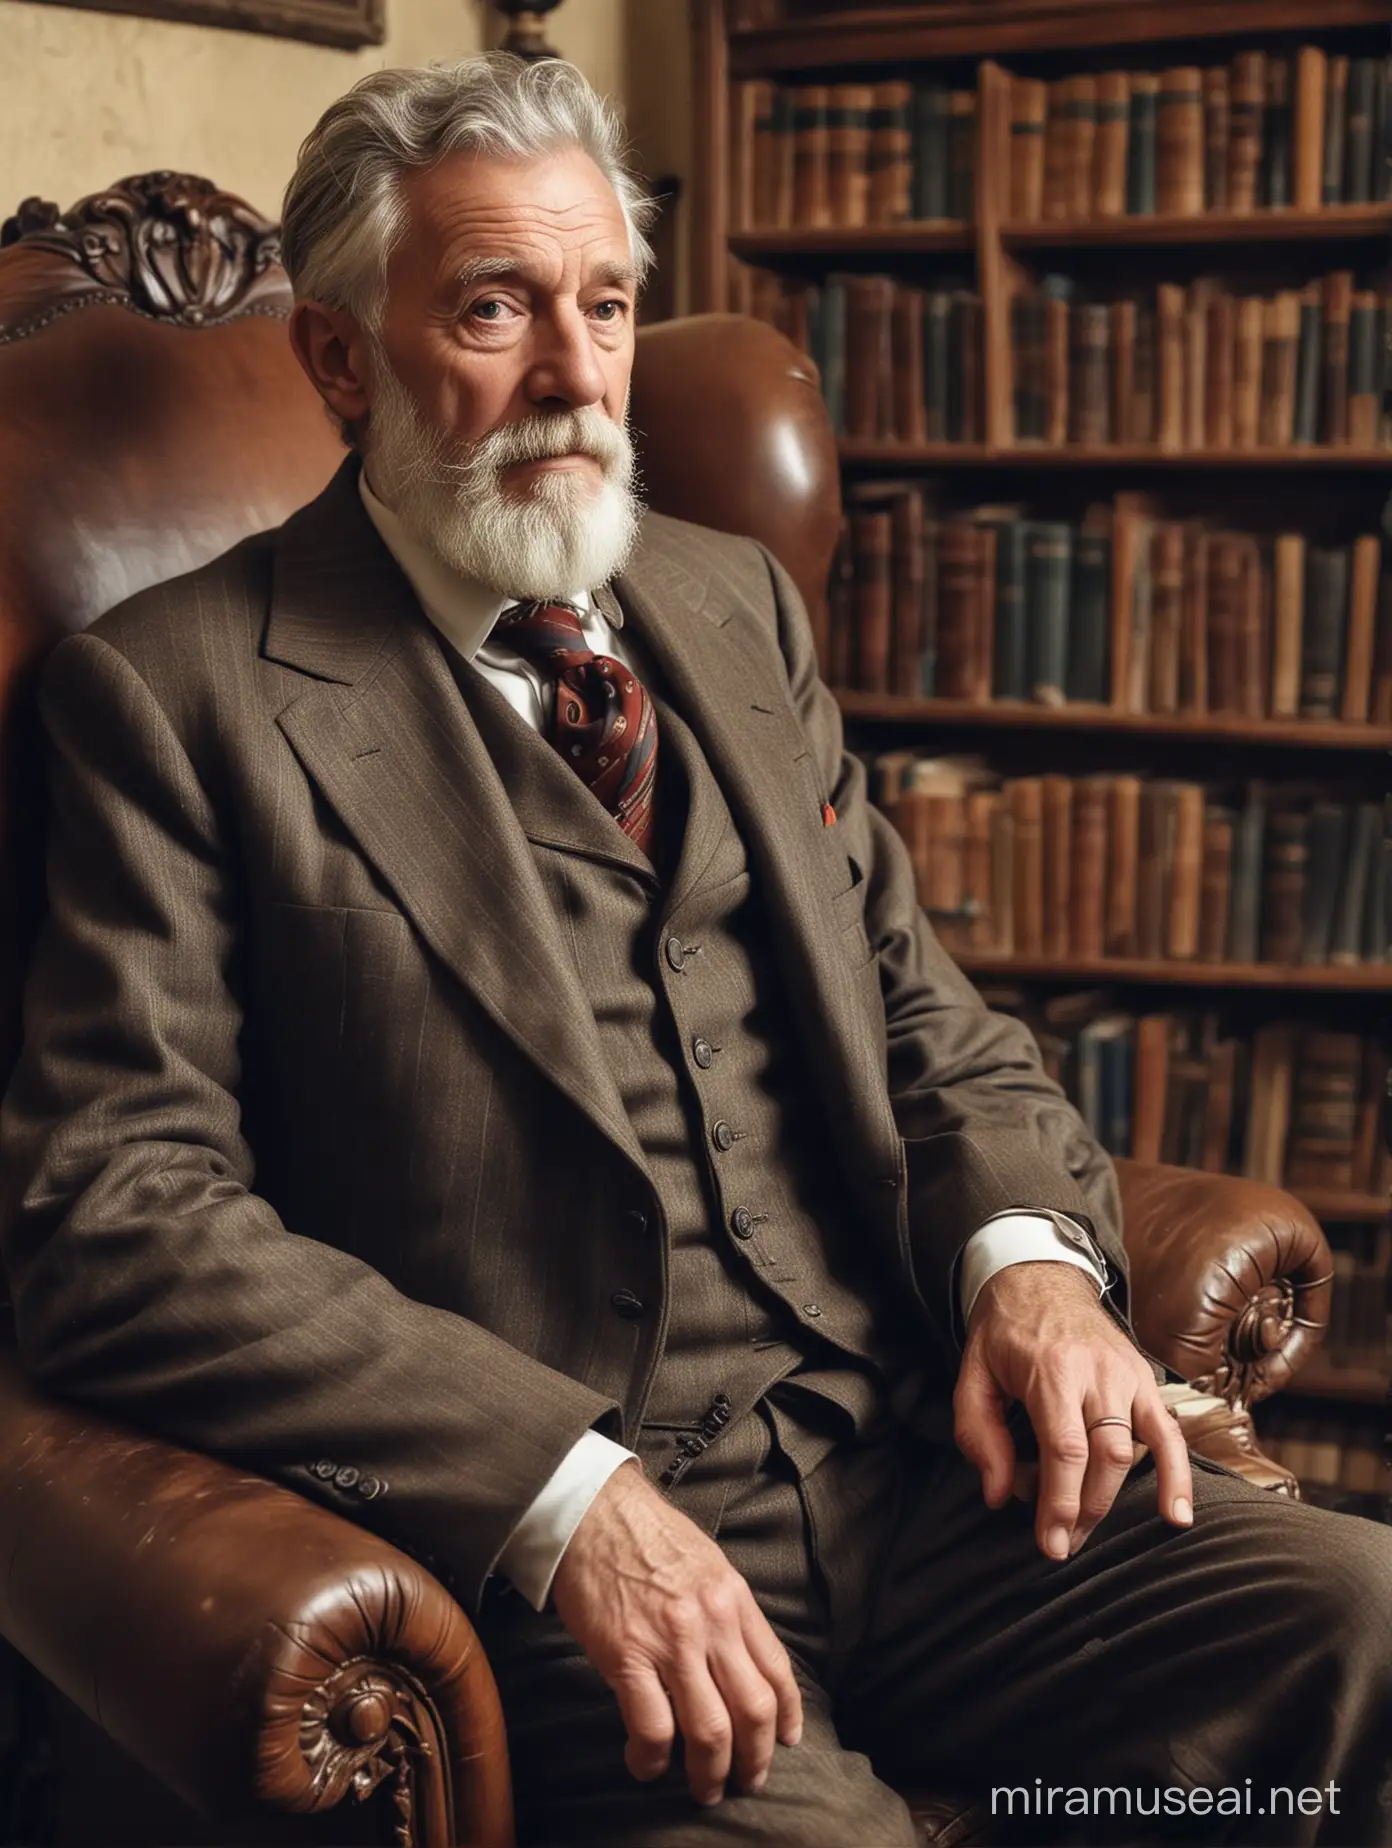 Anciano de barba desprolija, algo desaliñado, vestido con traje a la moda de 1930, sentado en un antiguo sillón de cuero, en una habitación con biblioteca, en una casona antigua.